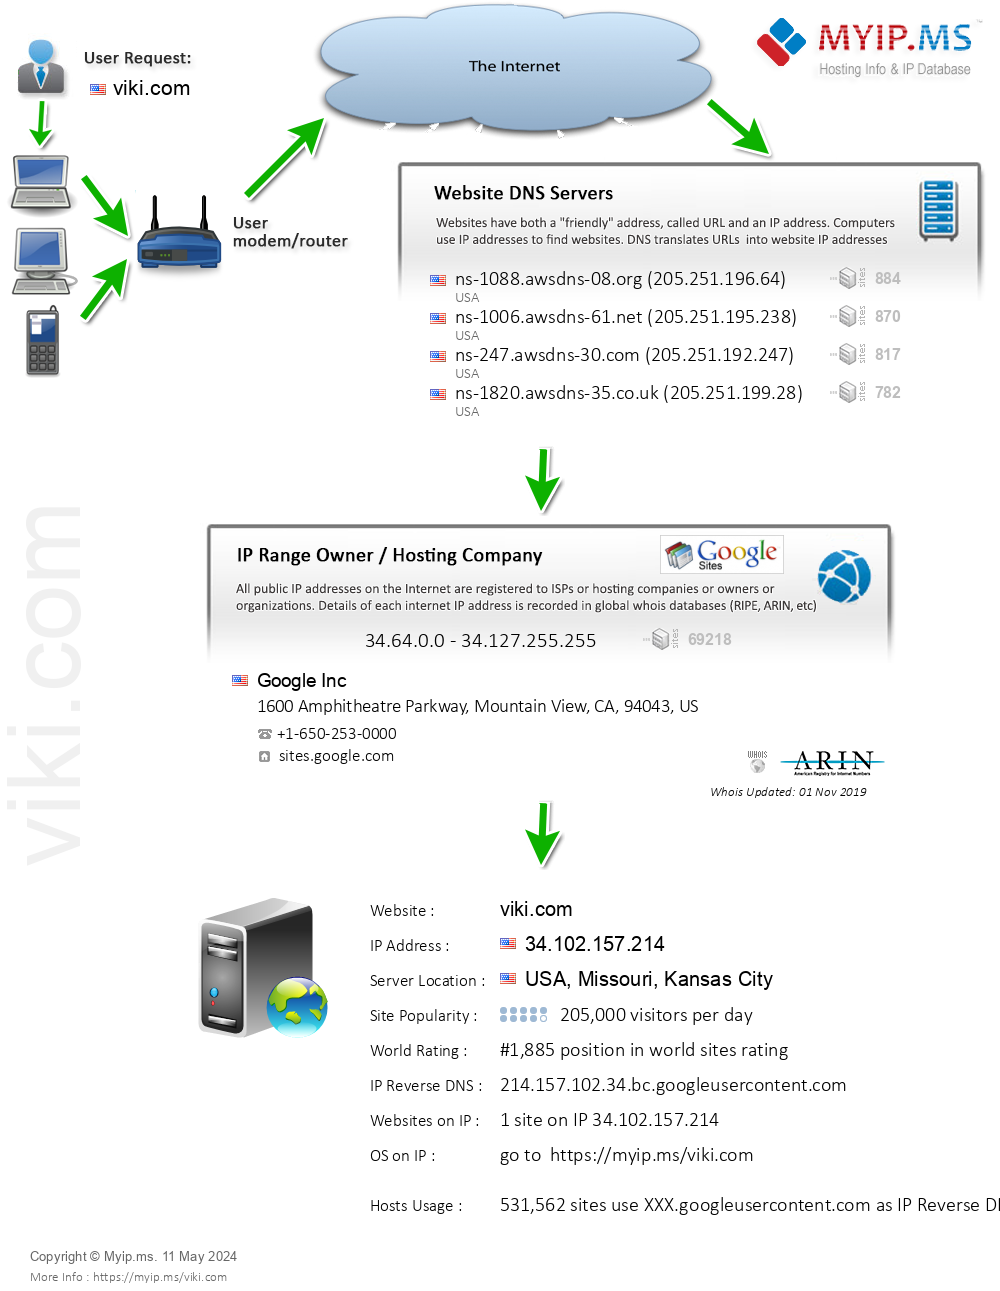 Viki.com - Website Hosting Visual IP Diagram